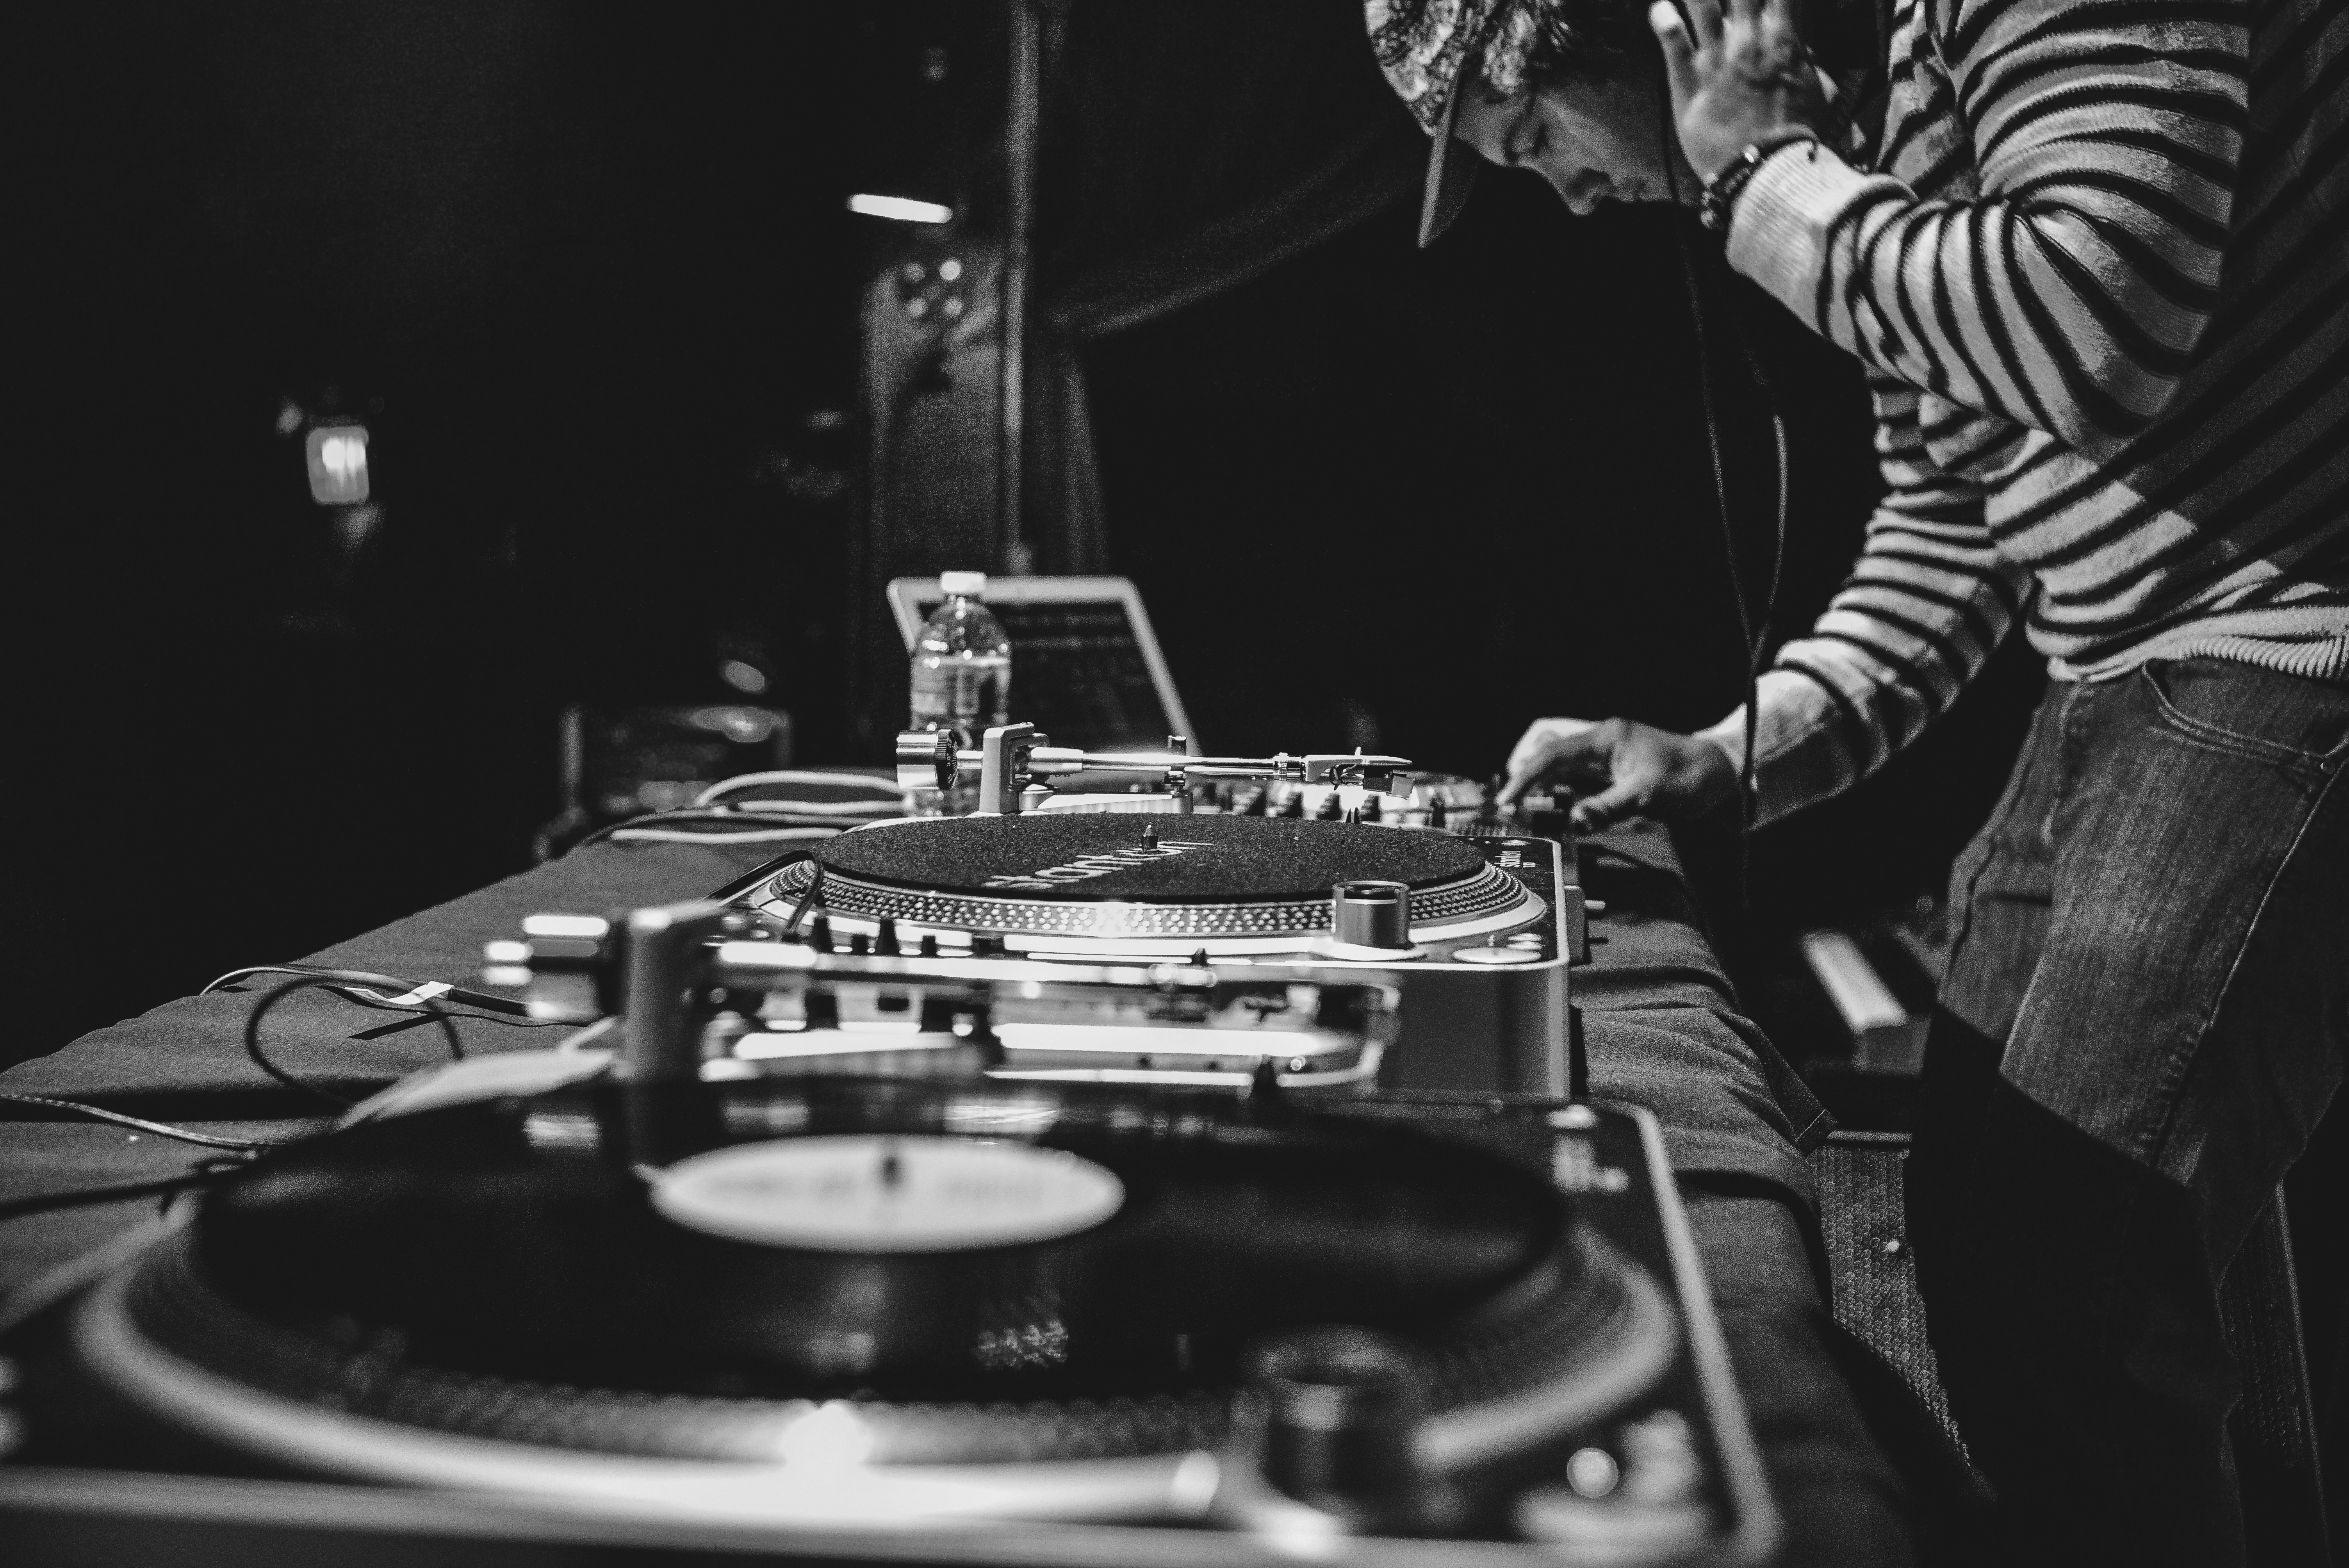 DJ som mikser musikk på vinylspiller og mikser